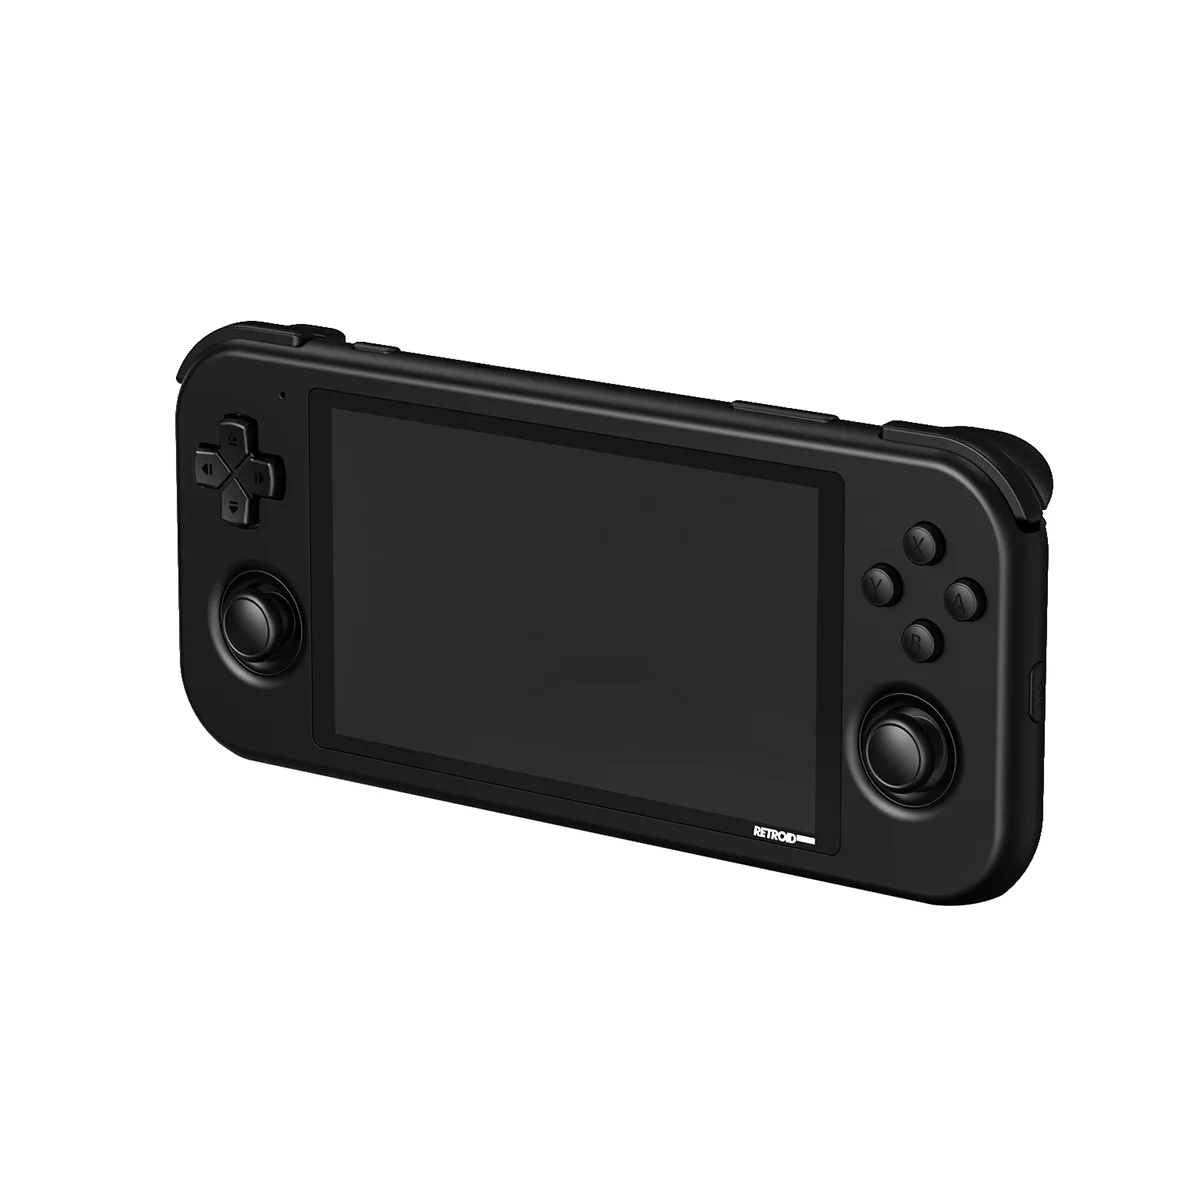 

Ретро игровая консоль Retroid Pocket 3G + 32 ГБ, 4,7 дюйма, сенсорный экран IPS, Android 11 OS, портативная игровая консоль для видео А